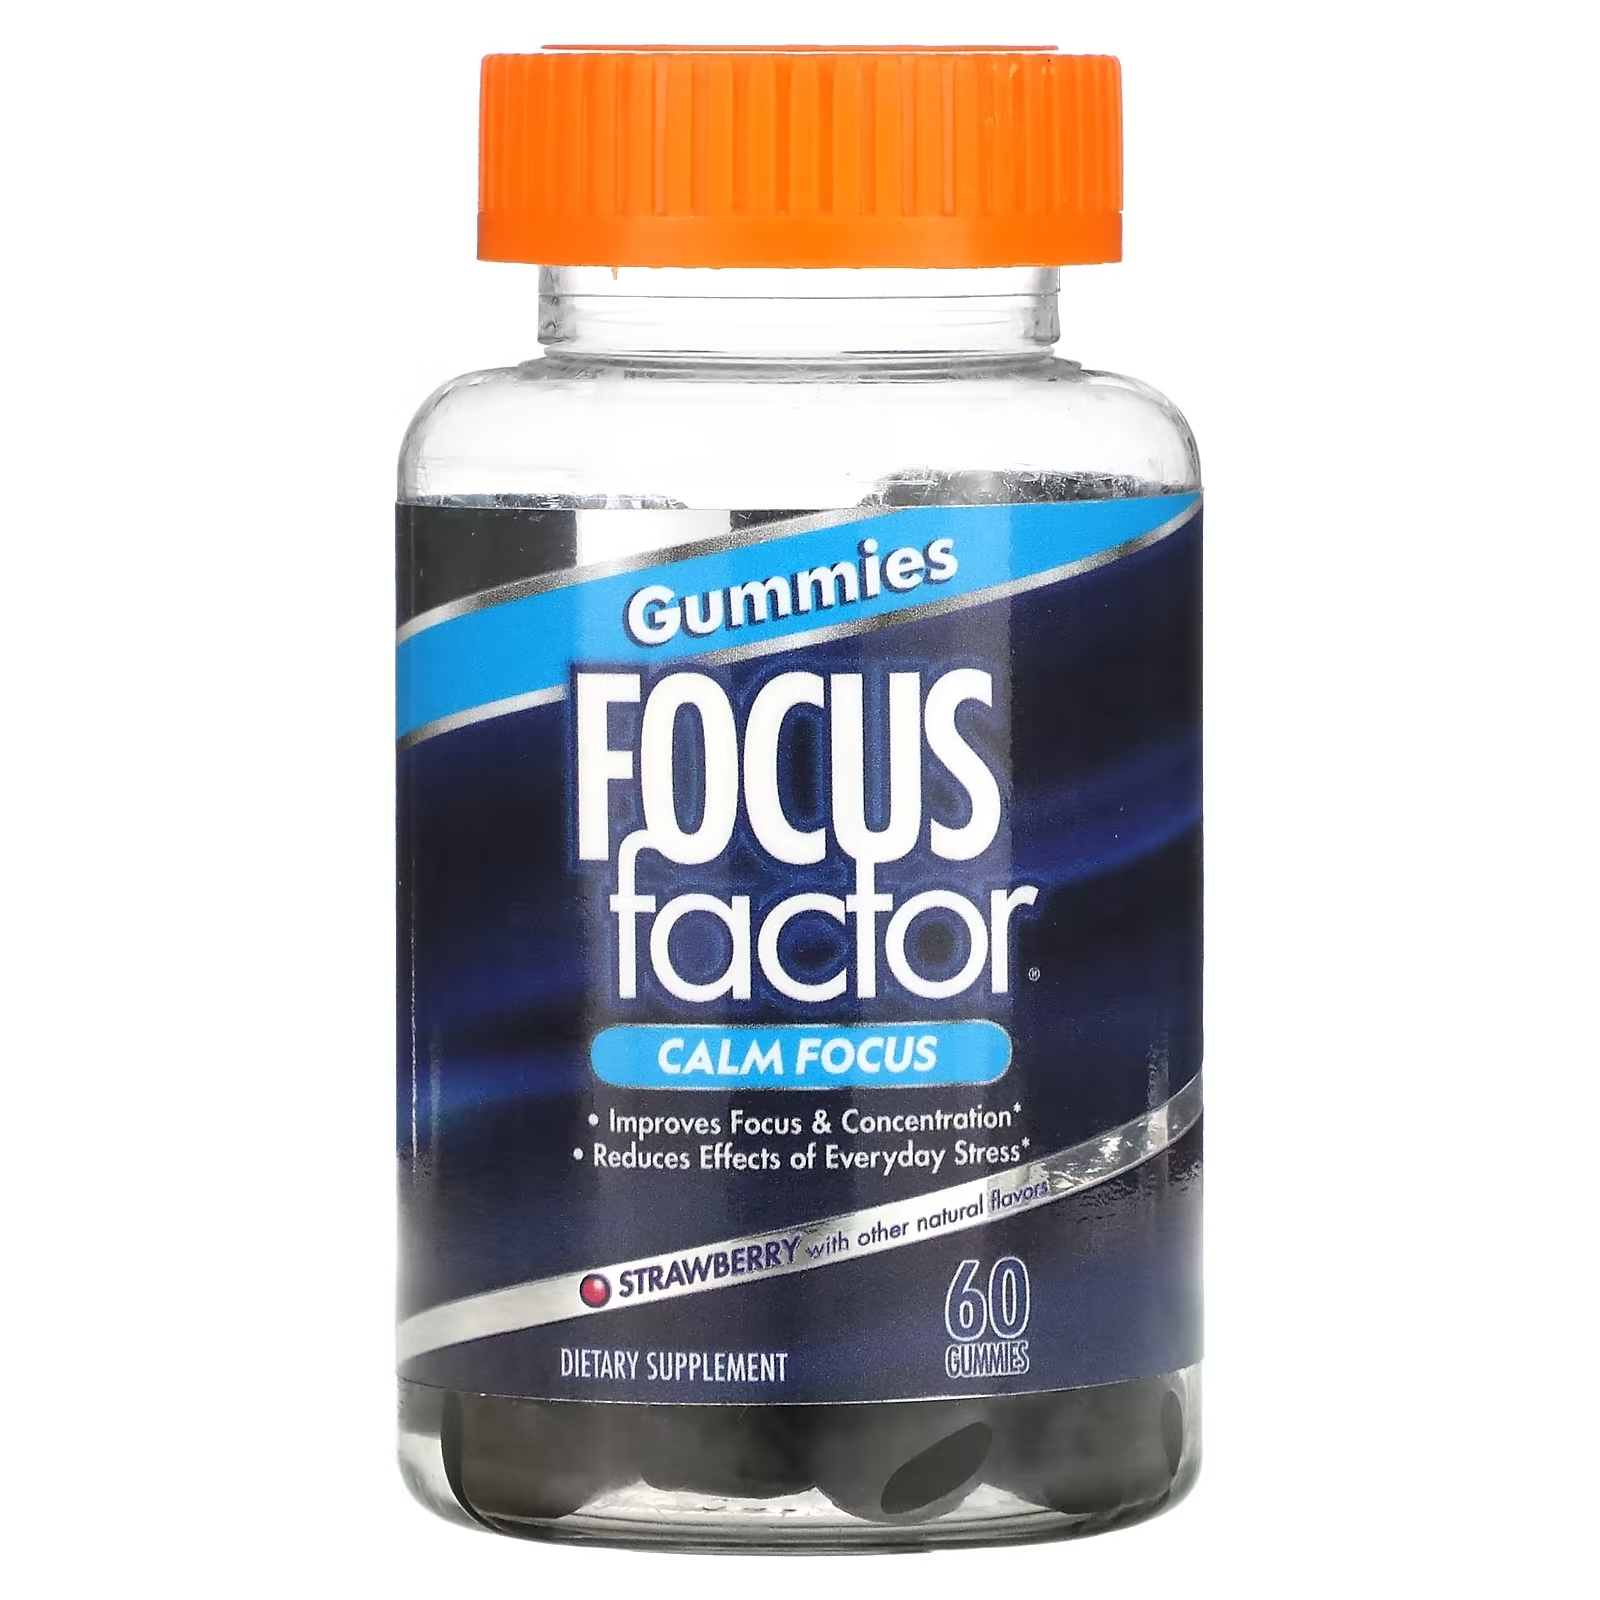 Focus Factor Calm Focus клубника, 60 жевательных таблеток focus factor добавка для детей focusfactor ягодный взрыв 60 жевательных пластинок